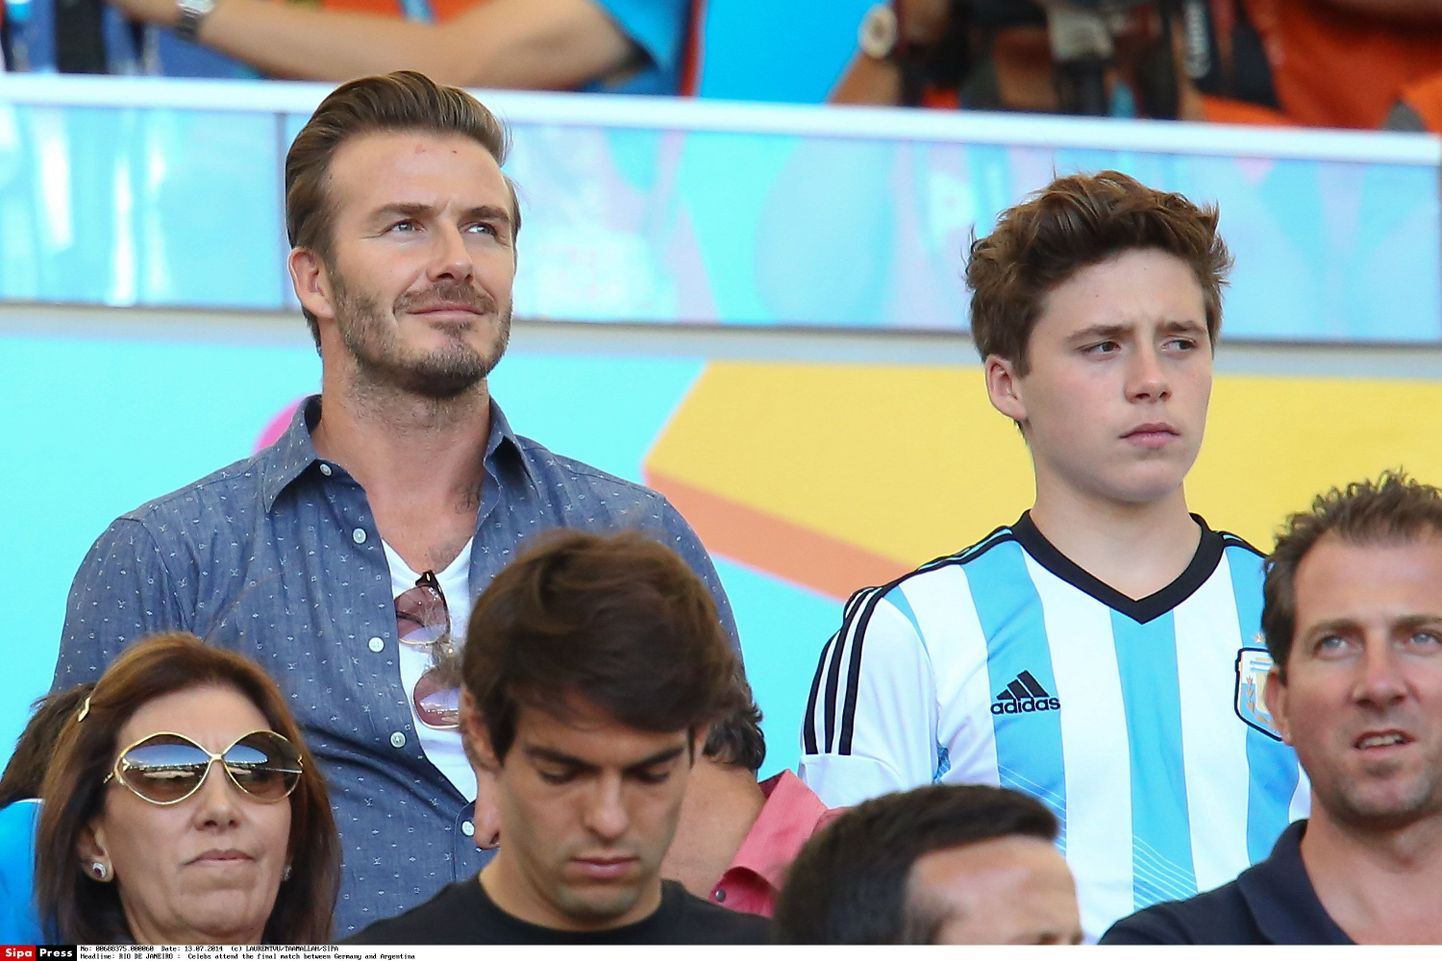 David ja Brooklyn (paremal) Beckham suvist jalgpalli MMi finaali vaatamas